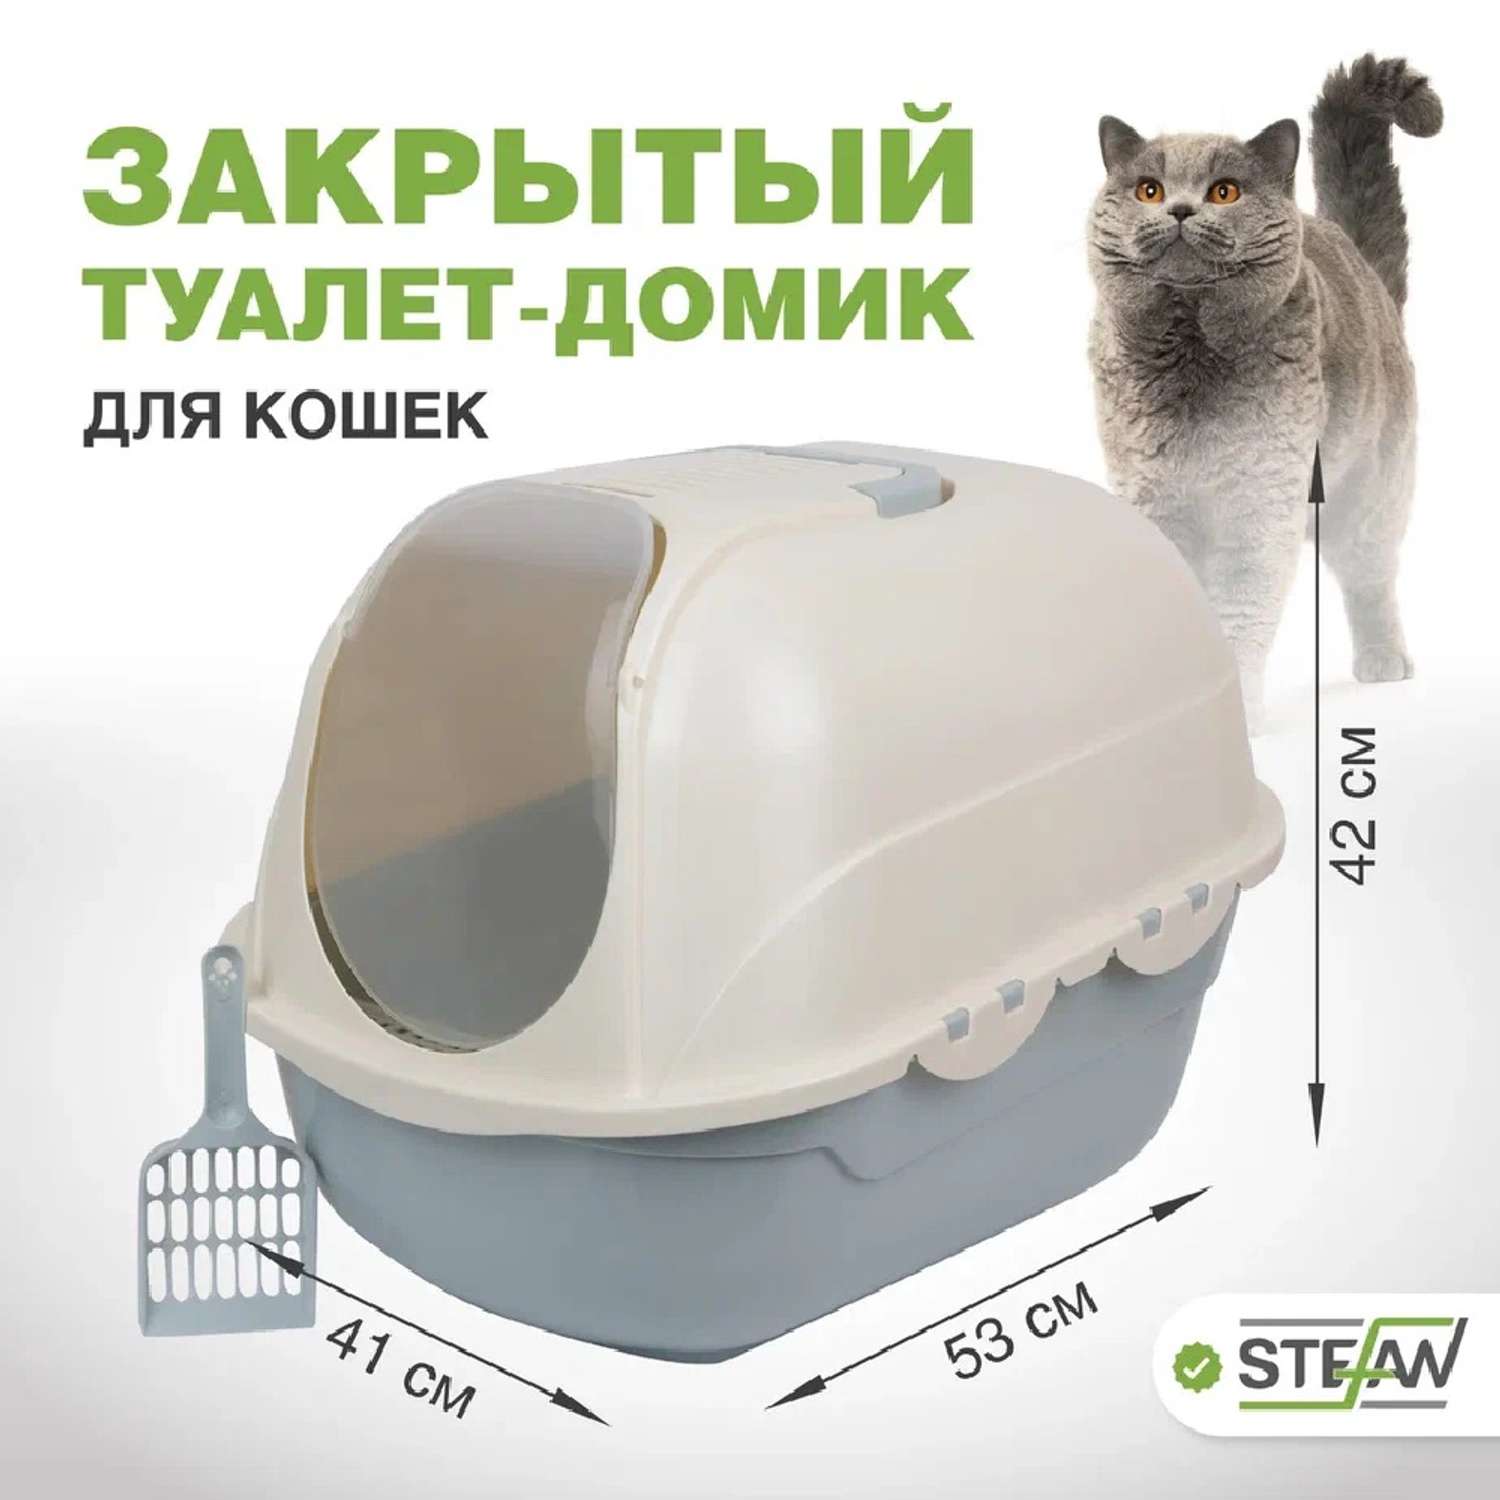 Туалет домик лоток для кошек Stefan закрытый совок в комплекте 53х41х42cm  голубой купить по цене 3181 ₽ с доставкой в Москве и России, отзывы, фото